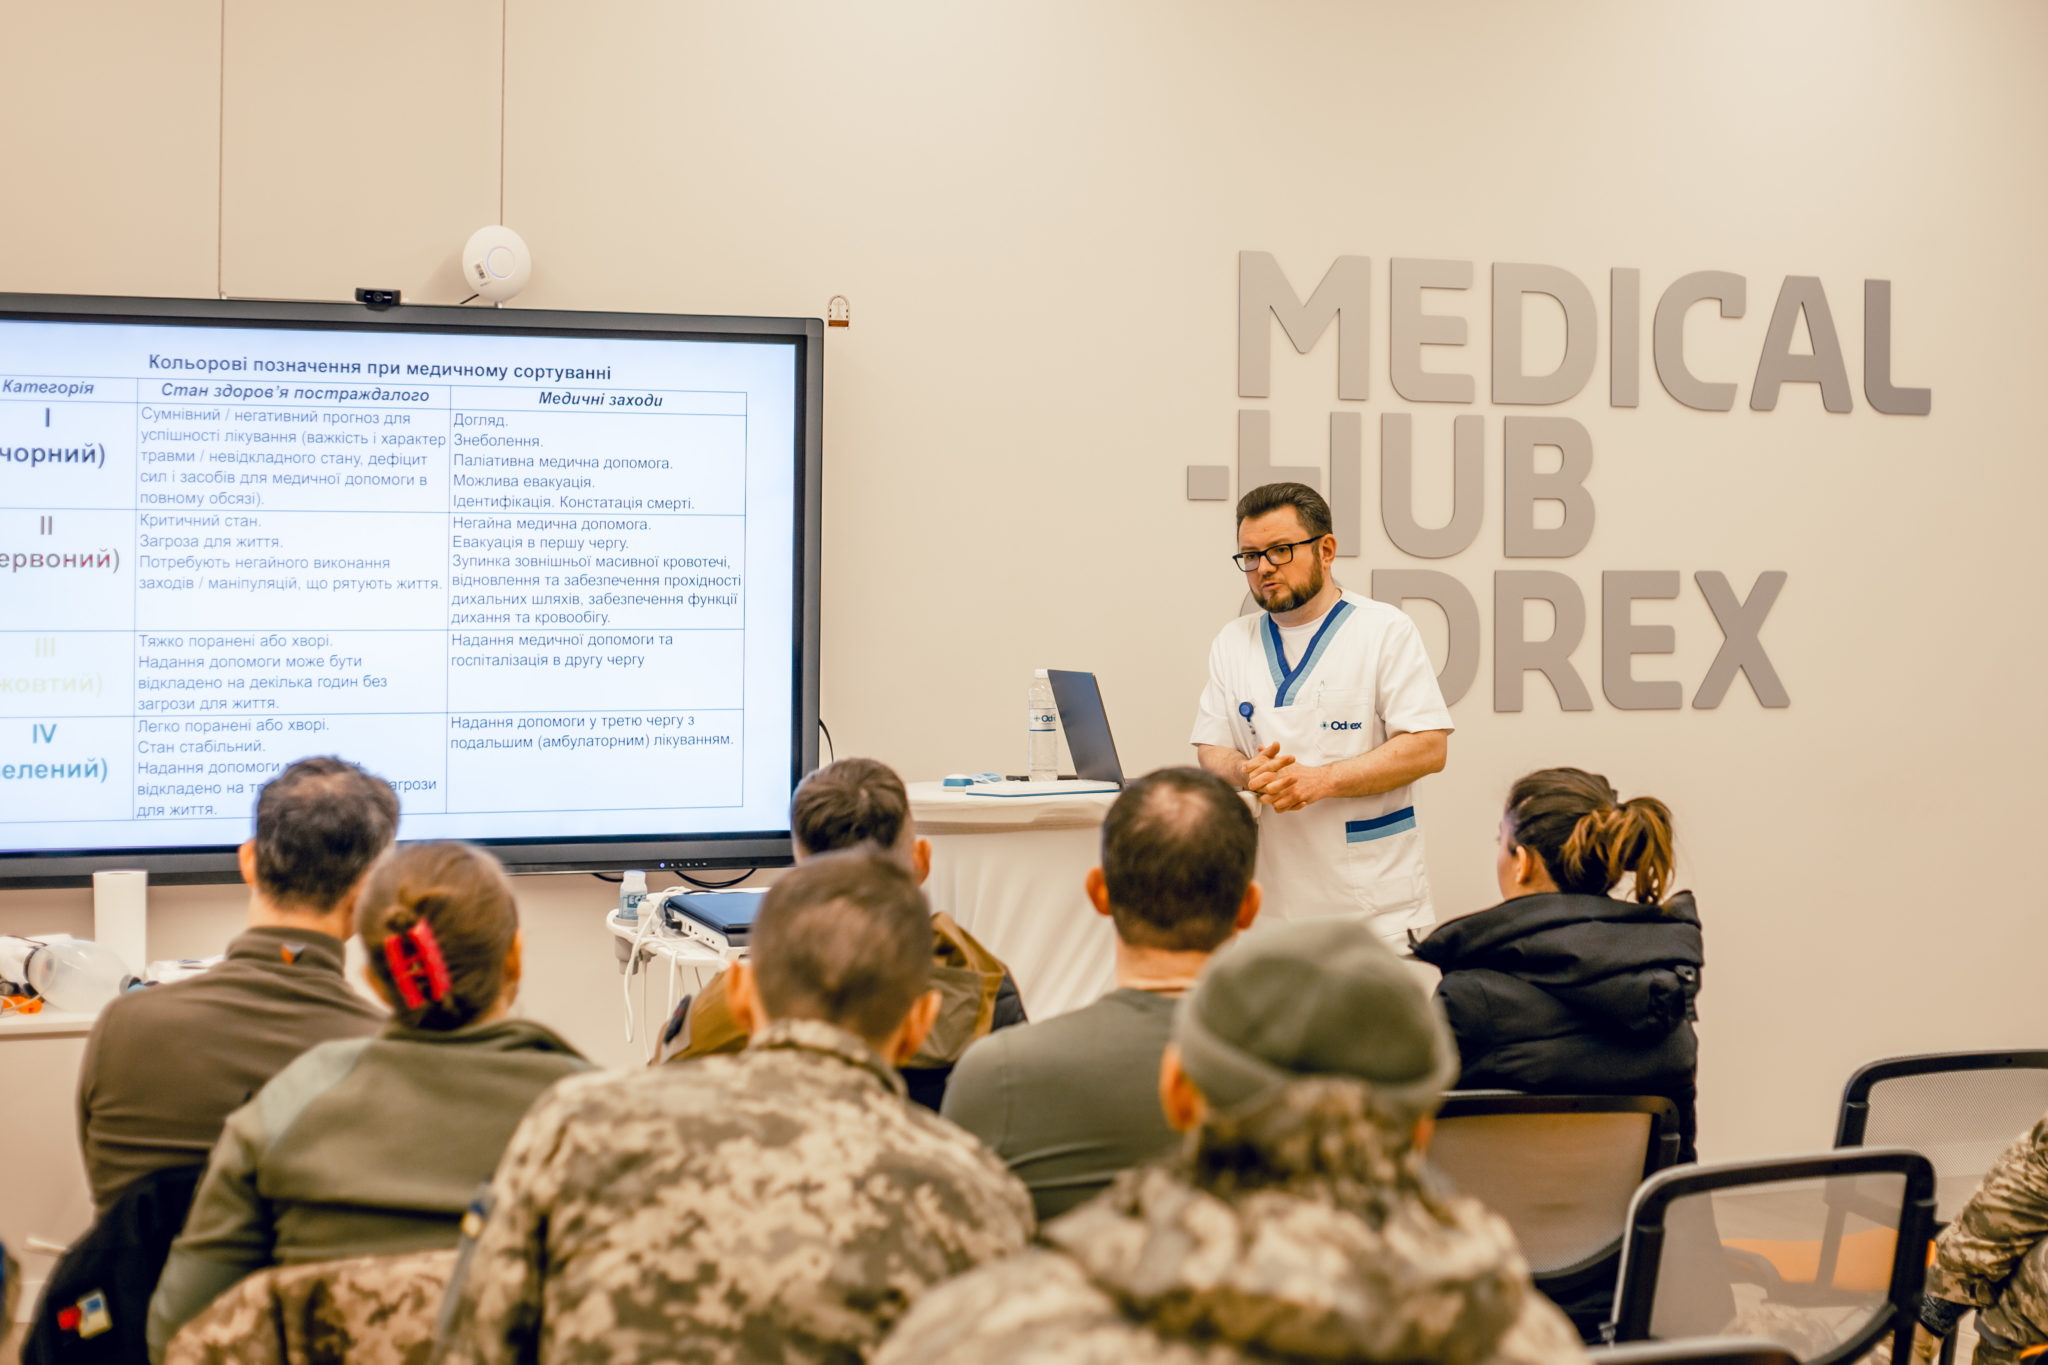 Тренінги з тактичної медицини для медиків ЗСУ - Медичний дім Odrex